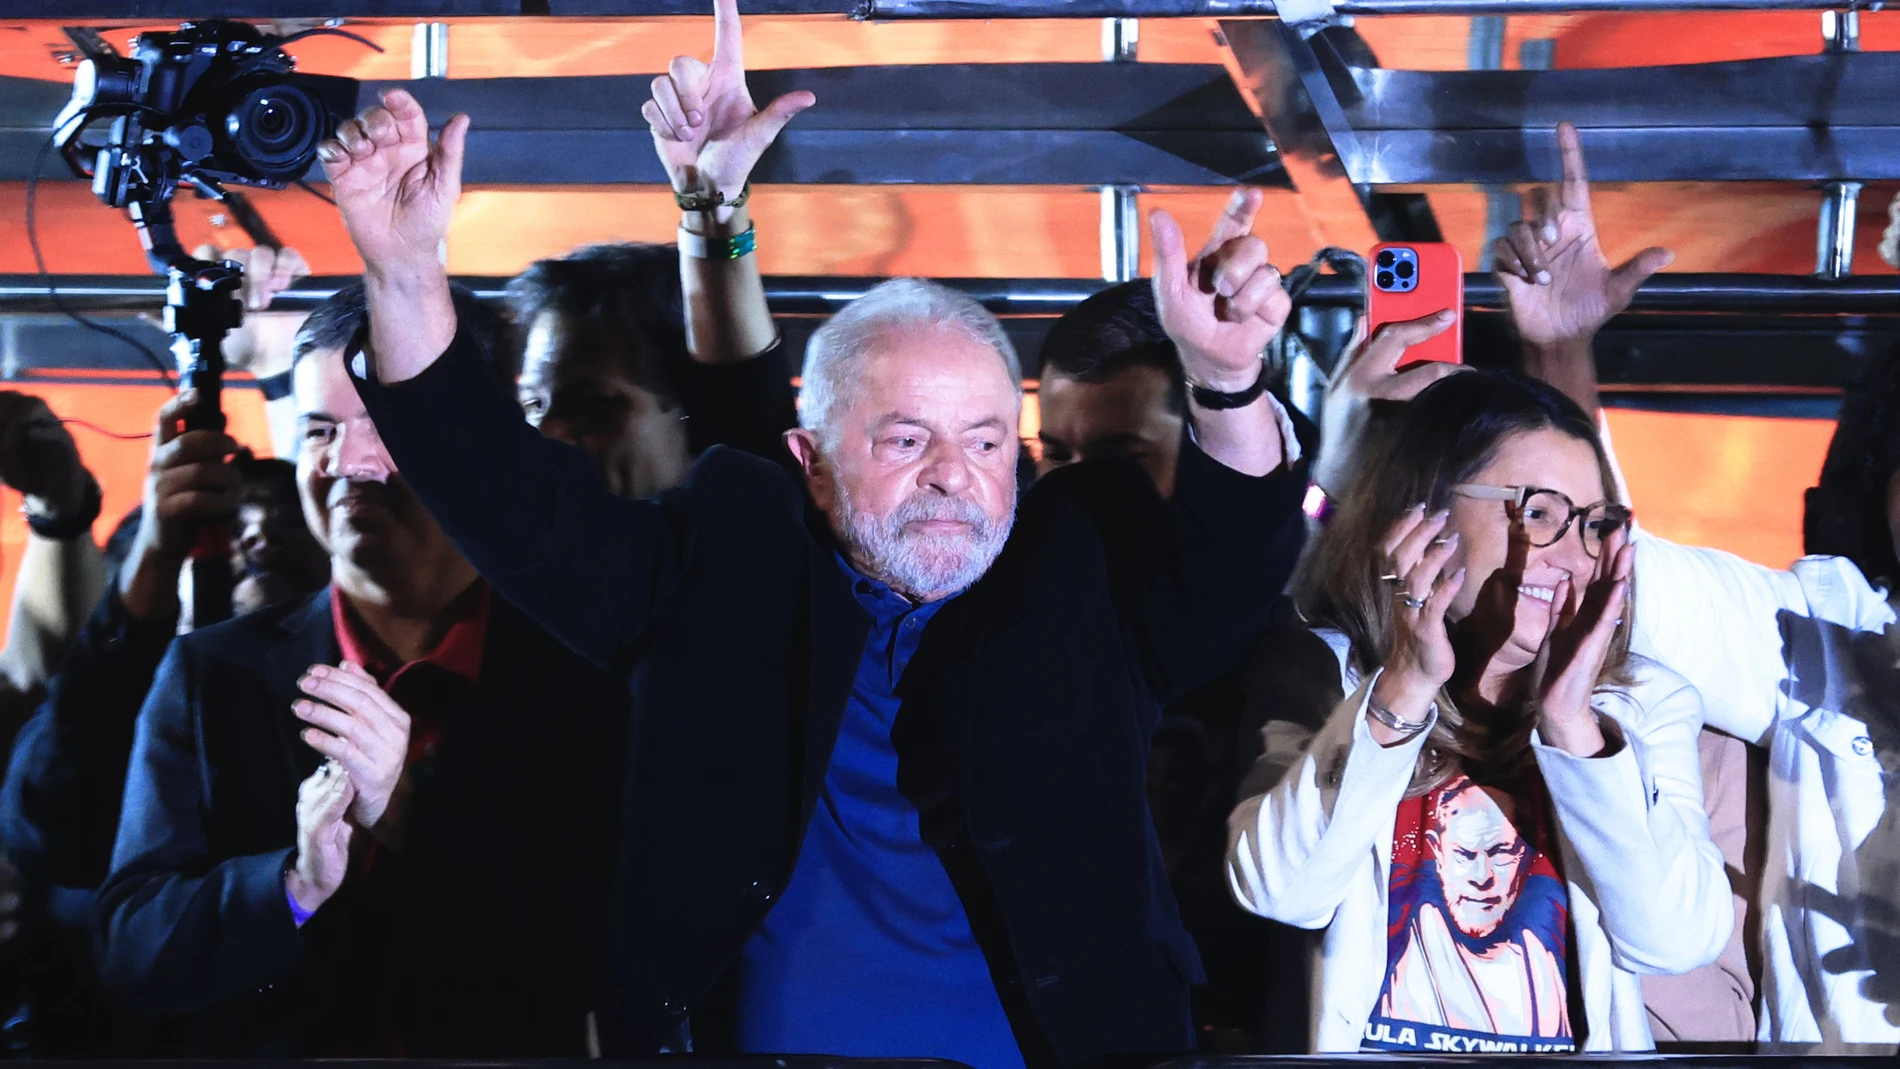 El expresidente y candidato presidencial Luiz Inácio Lula da Silva, acompañado de su esposa, celebra los resultados de las elecciones presidenciales.